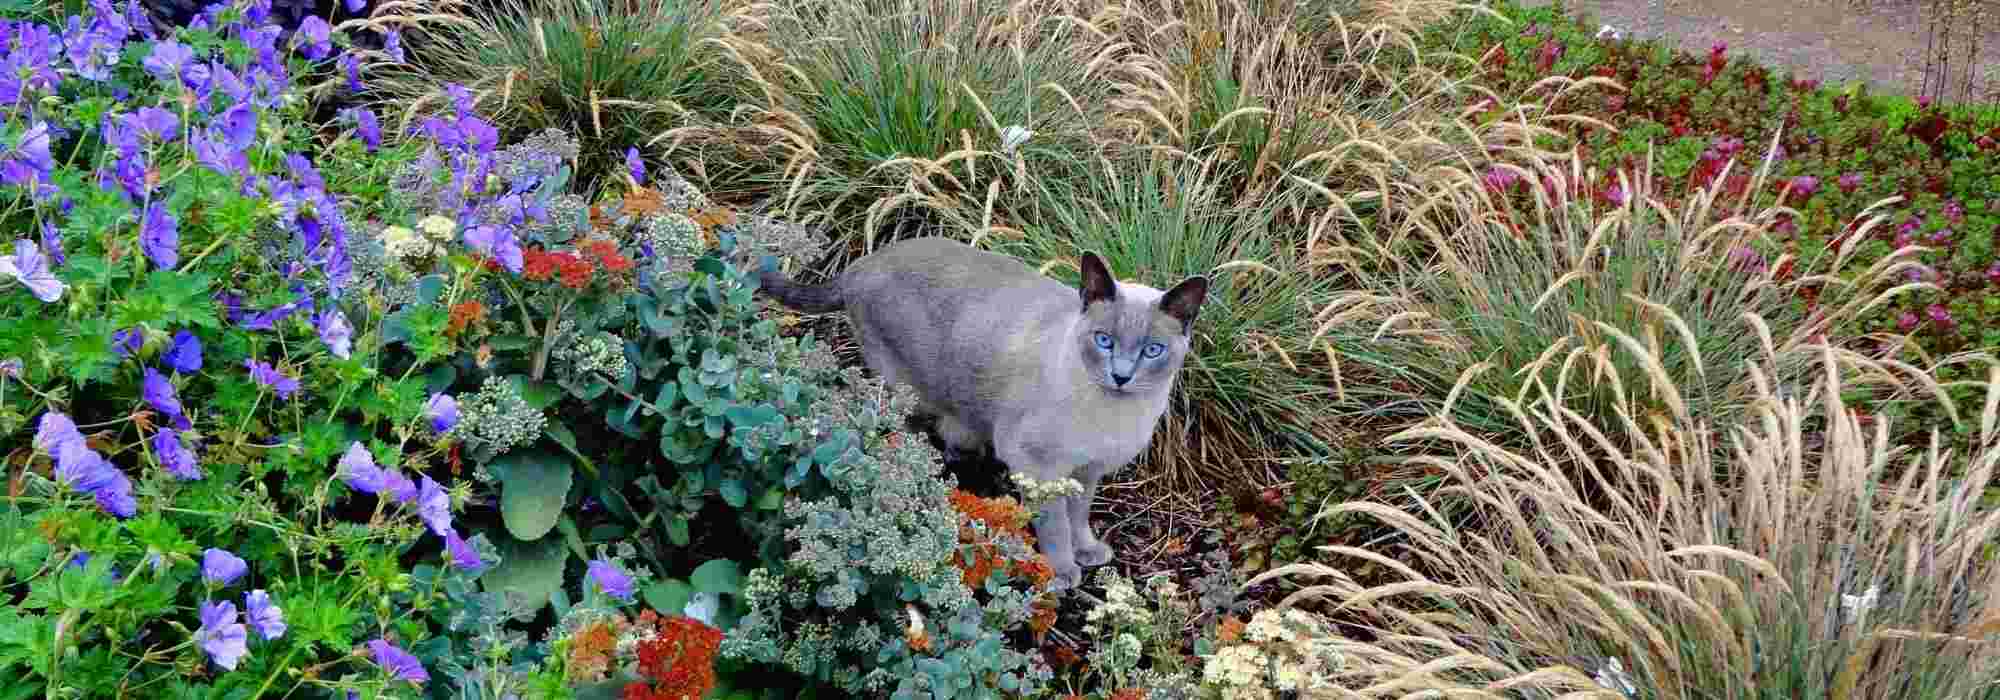 Quels sont les répulsifs efficaces pour éloigner les chats de son jardin ?